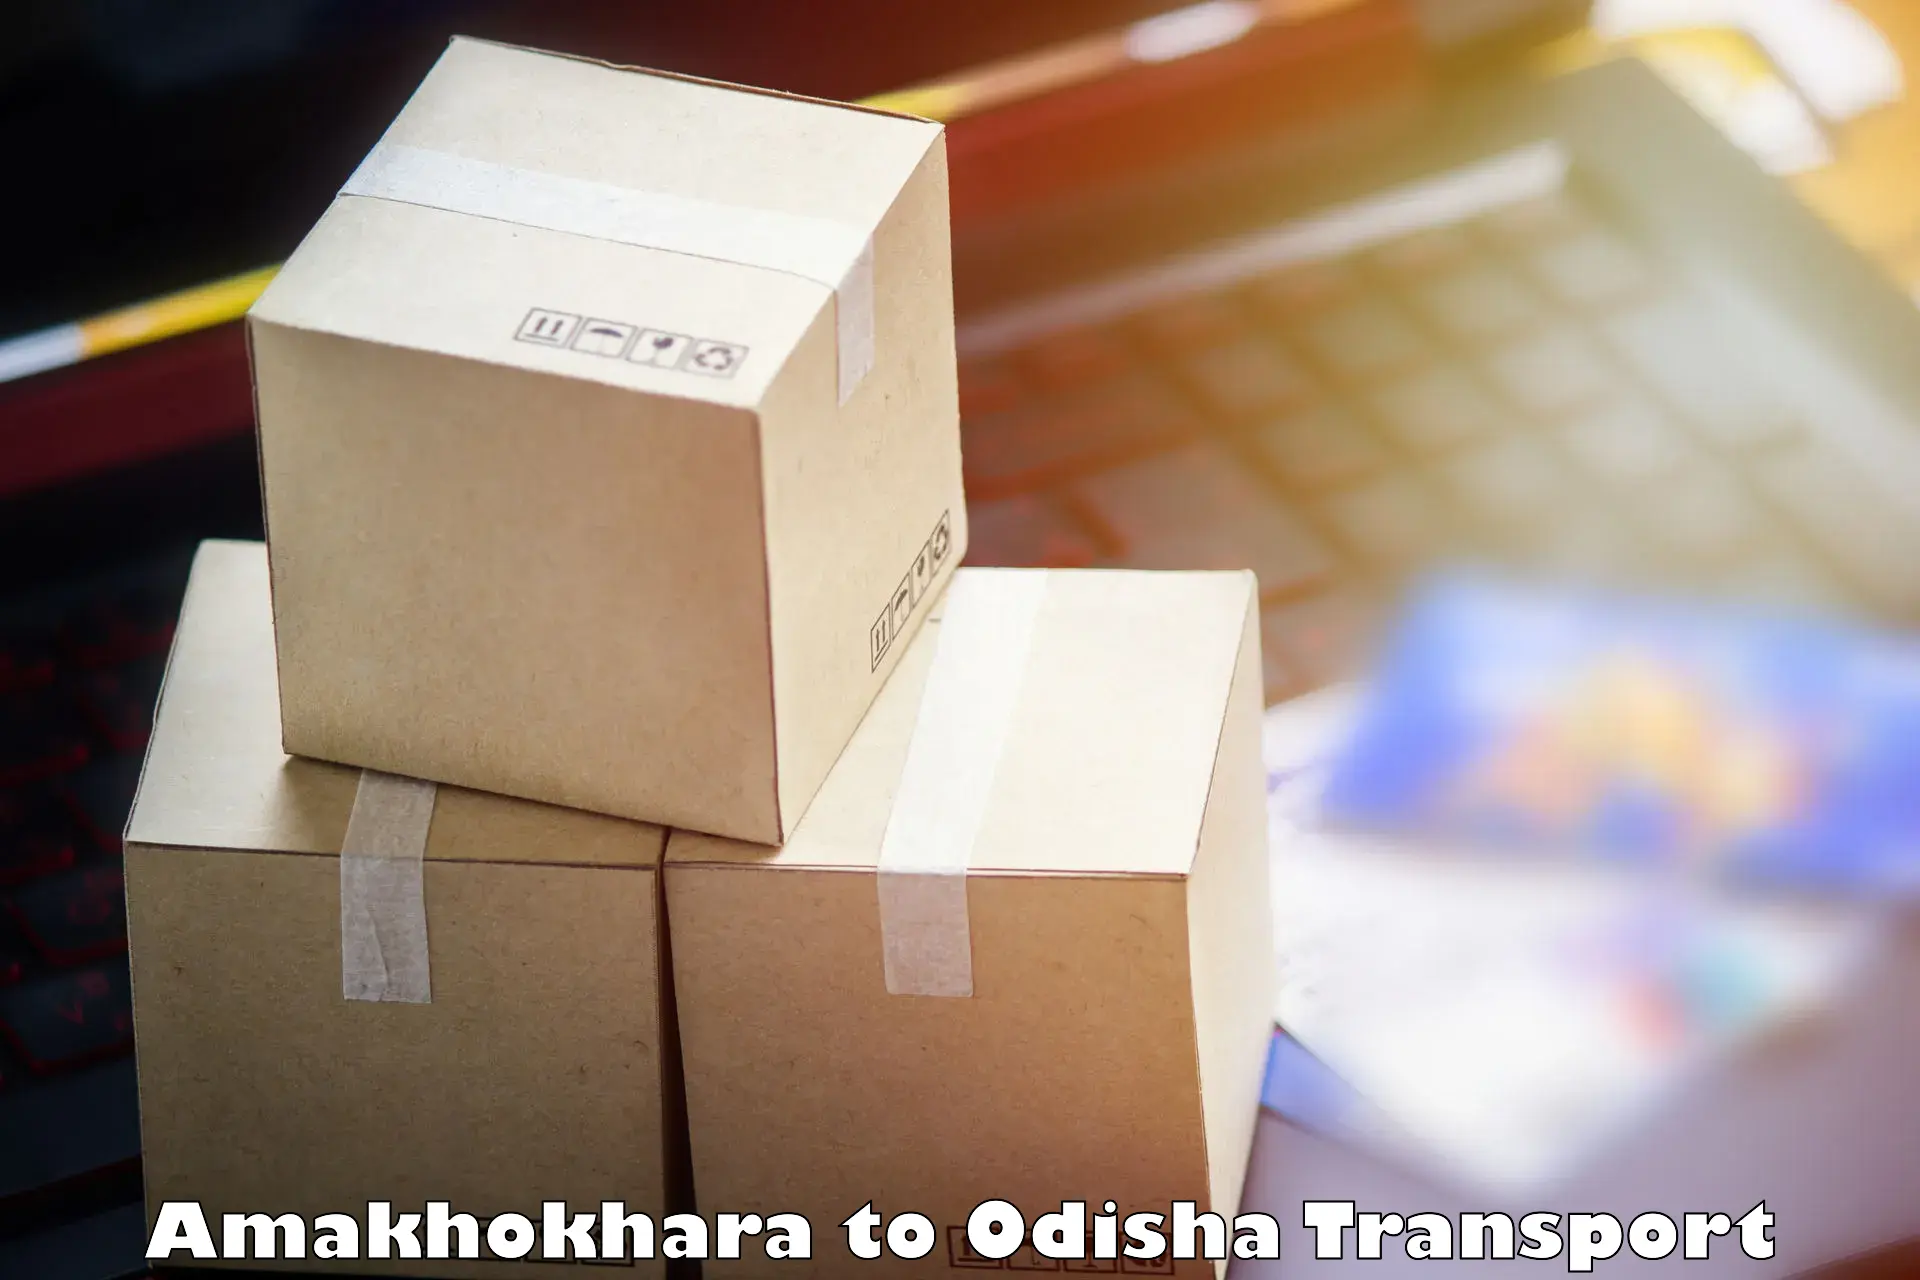 Air cargo transport services Amakhokhara to Udayagiri Kandhamal